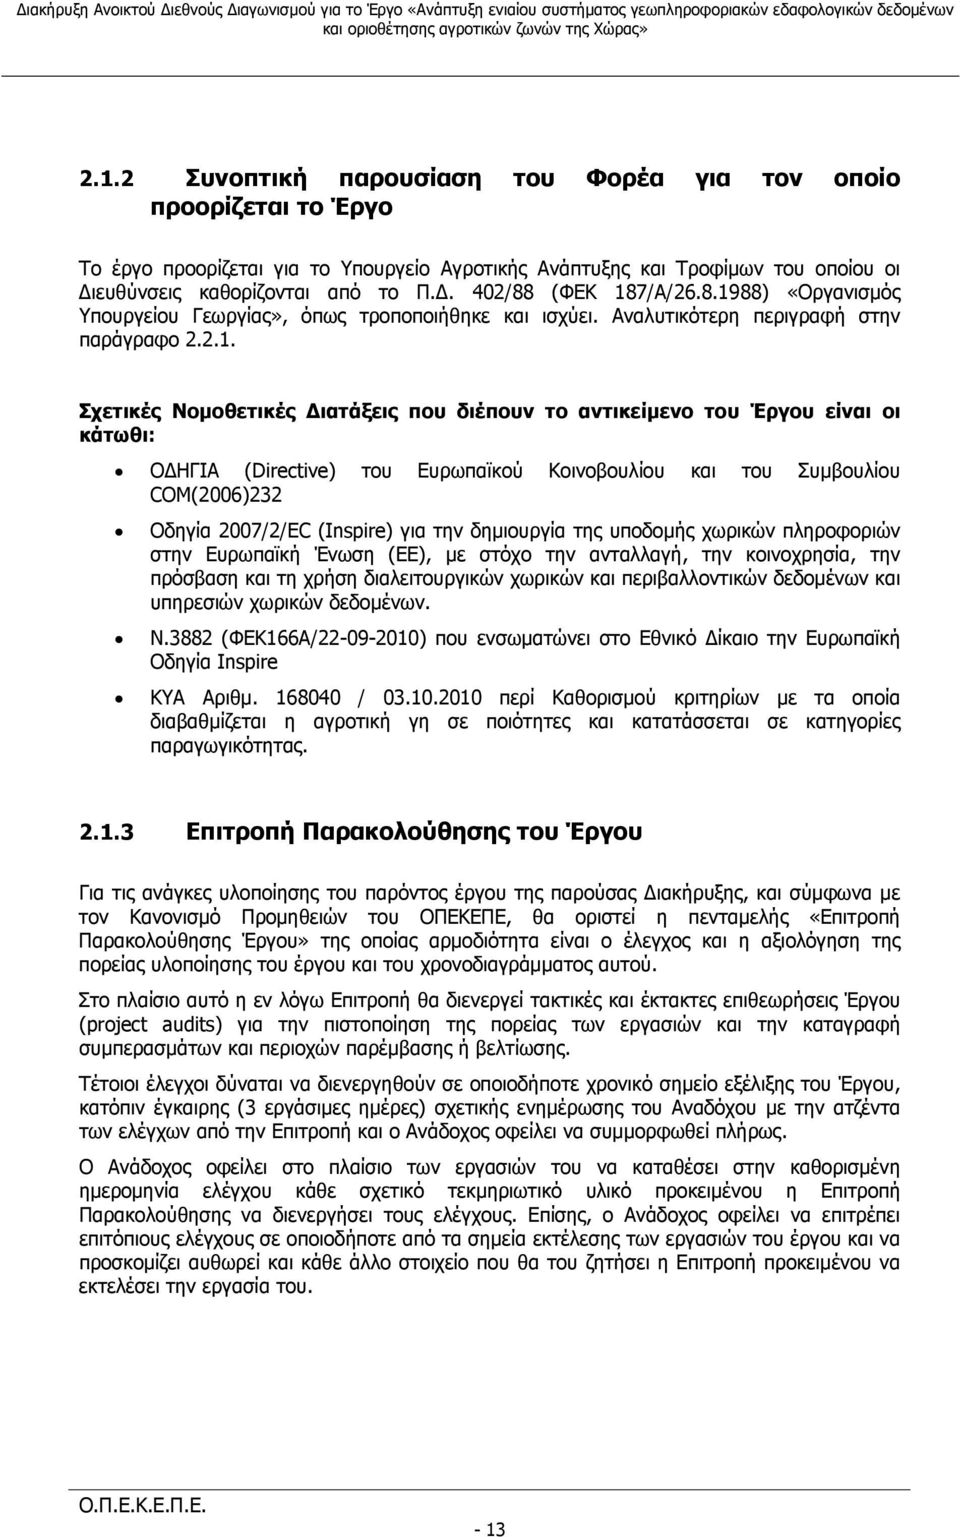 κάτωθι: ΟΔΗΓΙΑ (Directive) του Ευρωπαϊκού Κοινοβουλίου και του Συμβουλίου COM(2006)232 Οδηγία 2007/2/EC (Inspire) για την δημιουργία της υποδομής χωρικών πληροφοριών στην Ευρωπαϊκή Ένωση (ΕΕ), με